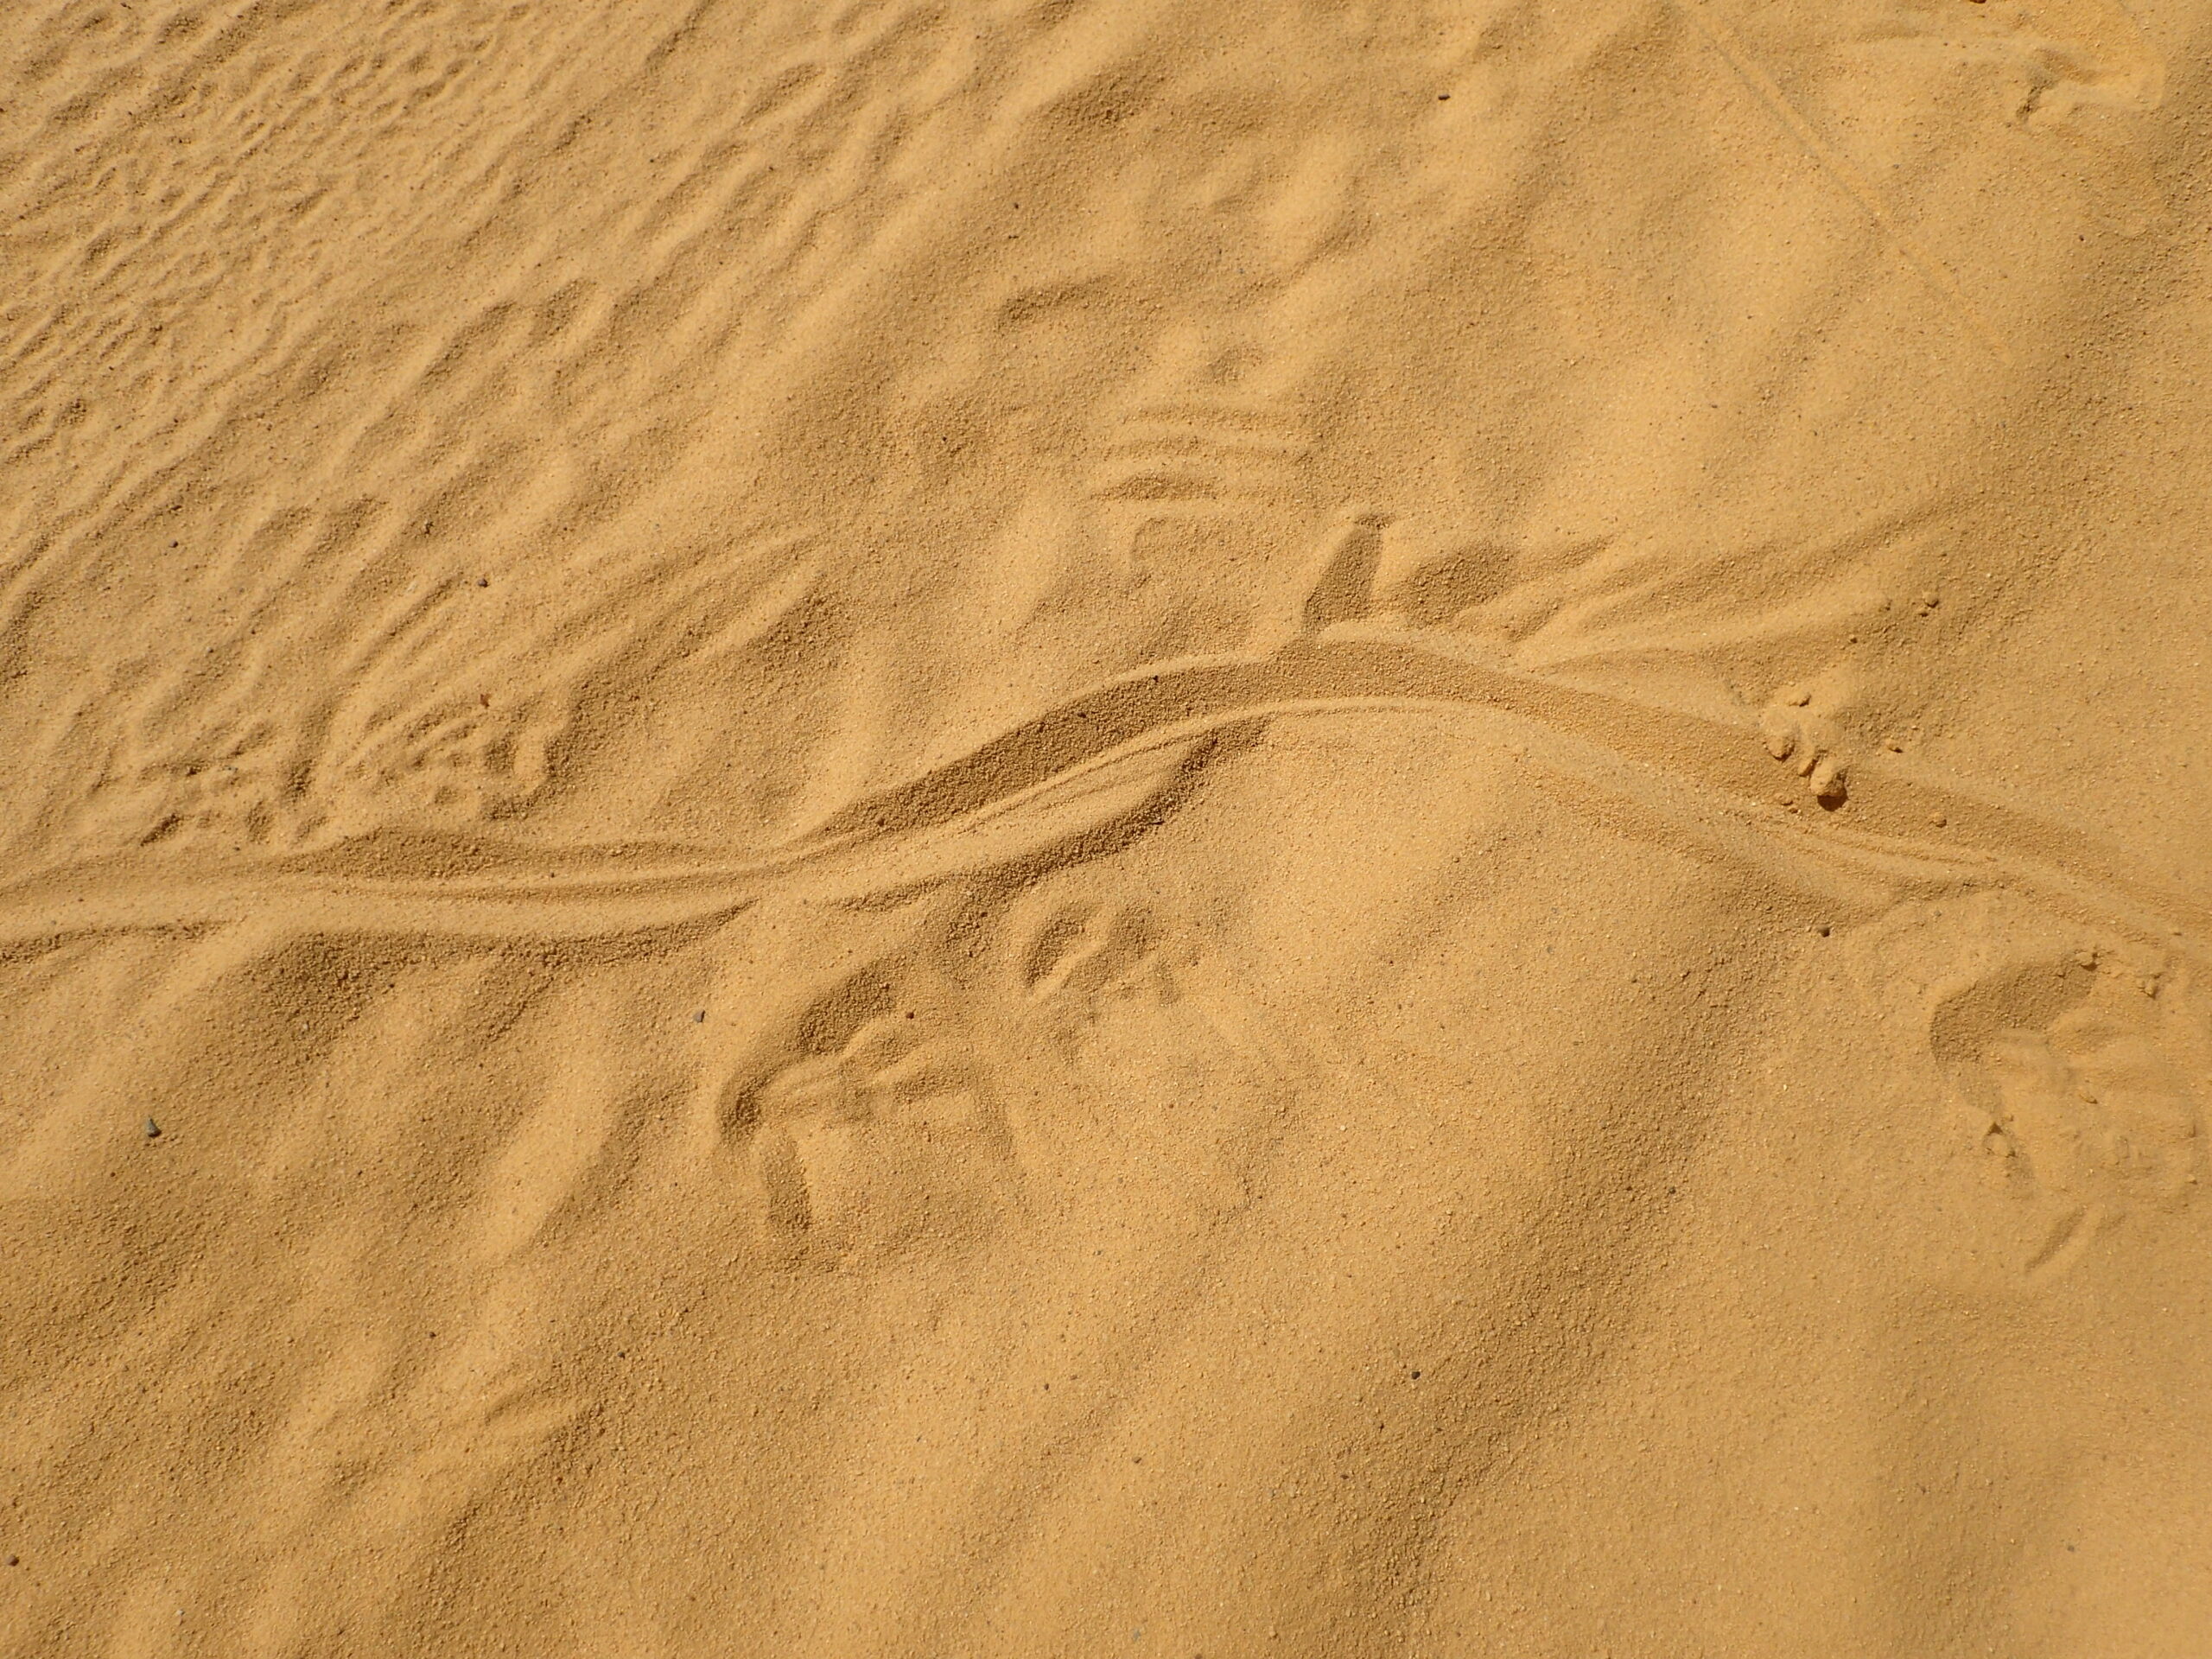 Desert sands and monster tracks (Goanna tracks in Western Australia)